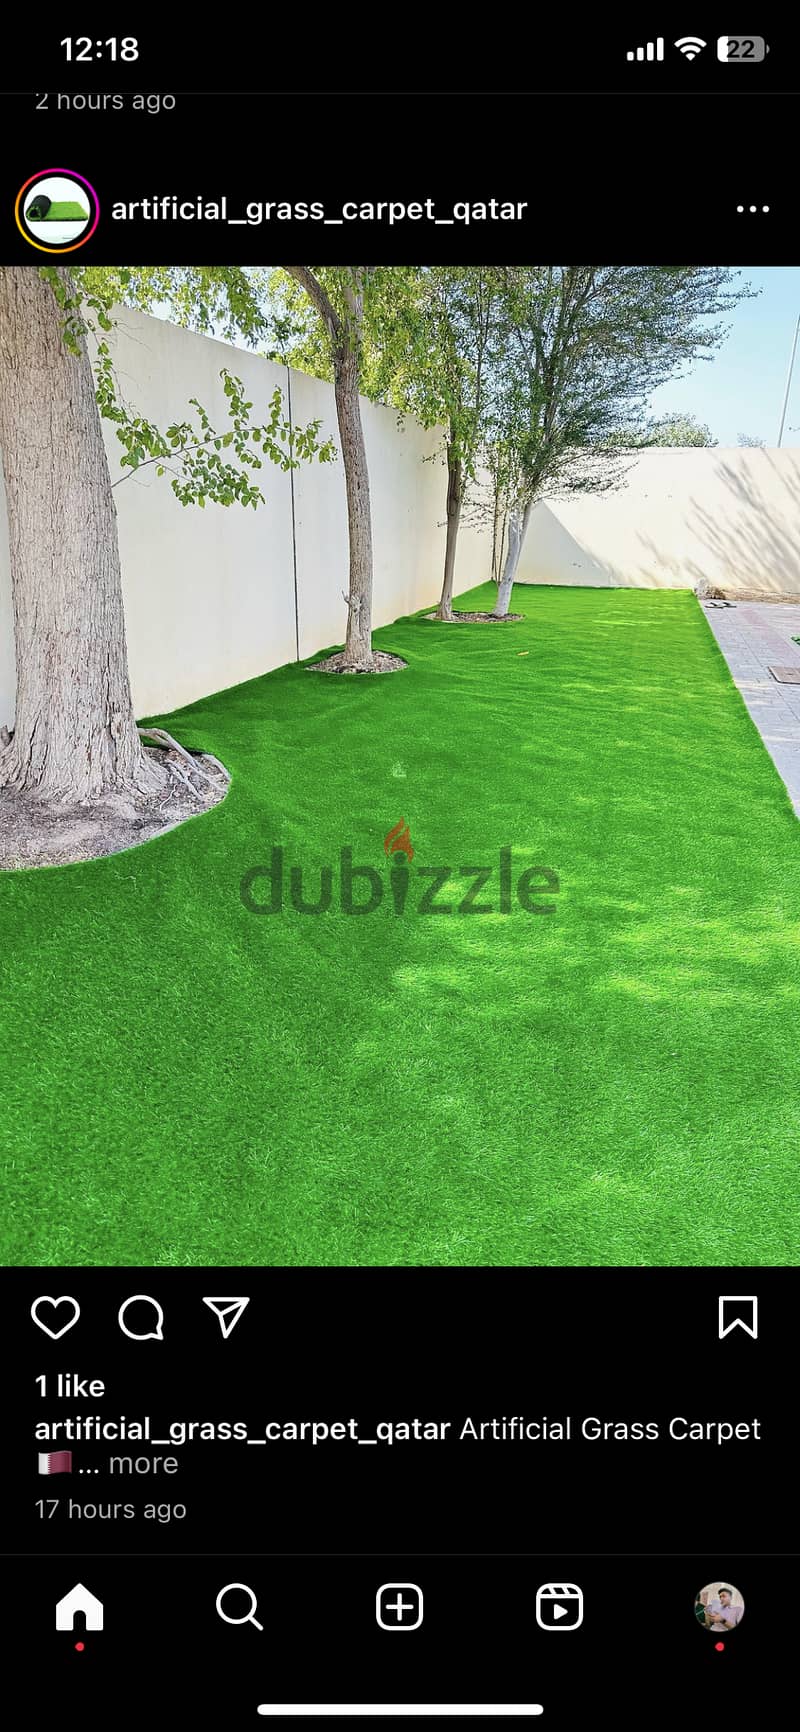 Artificial grass carpet installation 2